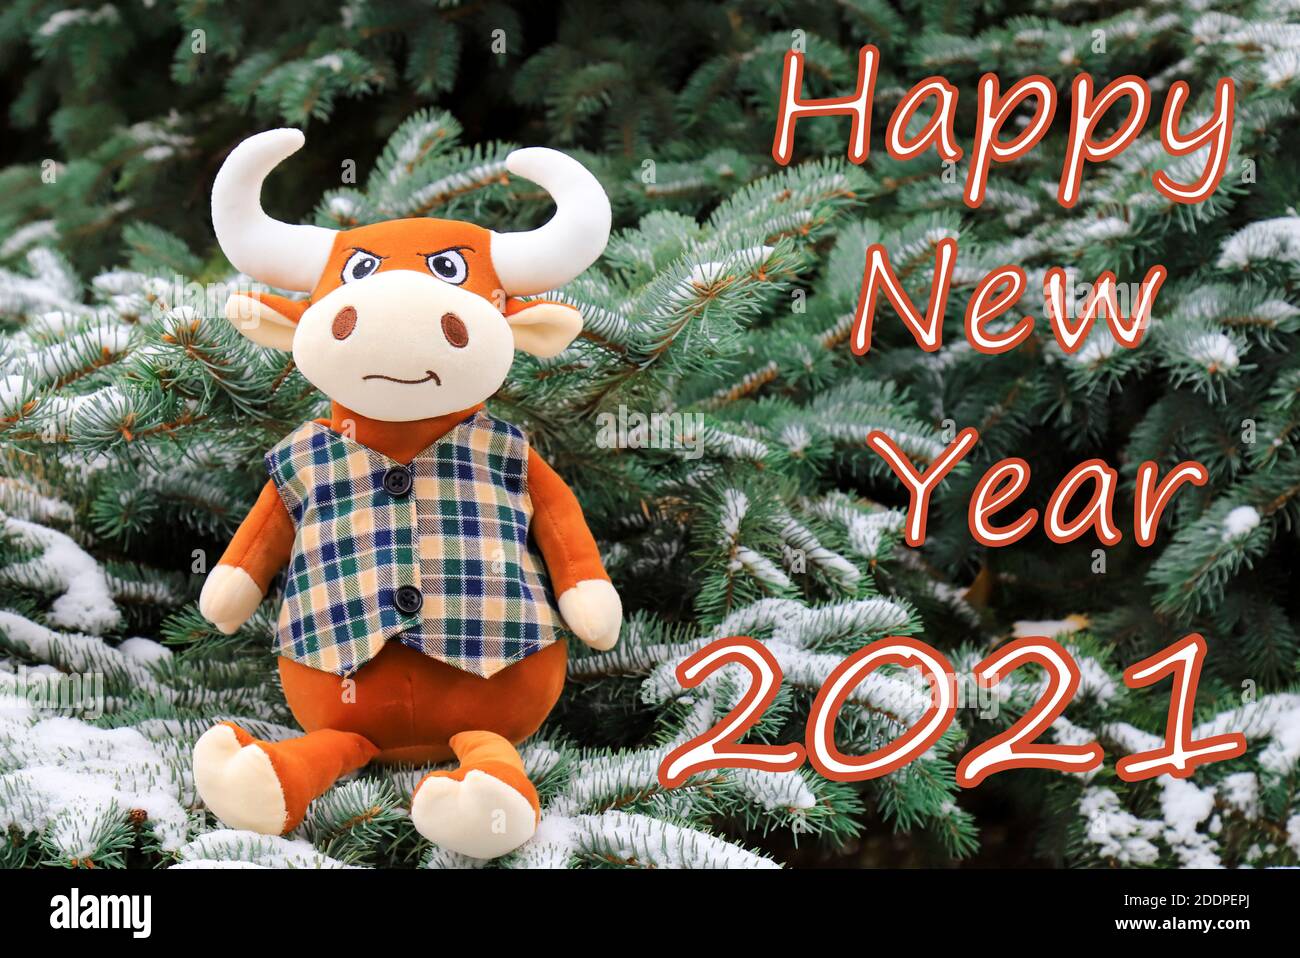 Carte de Noël avec inscription - bonne année 2021. Un drôle de jouet orange Bull se trouve sur un arbre de Noël recouvert de neige, symbole de la nouvelle année 2021 Banque D'Images